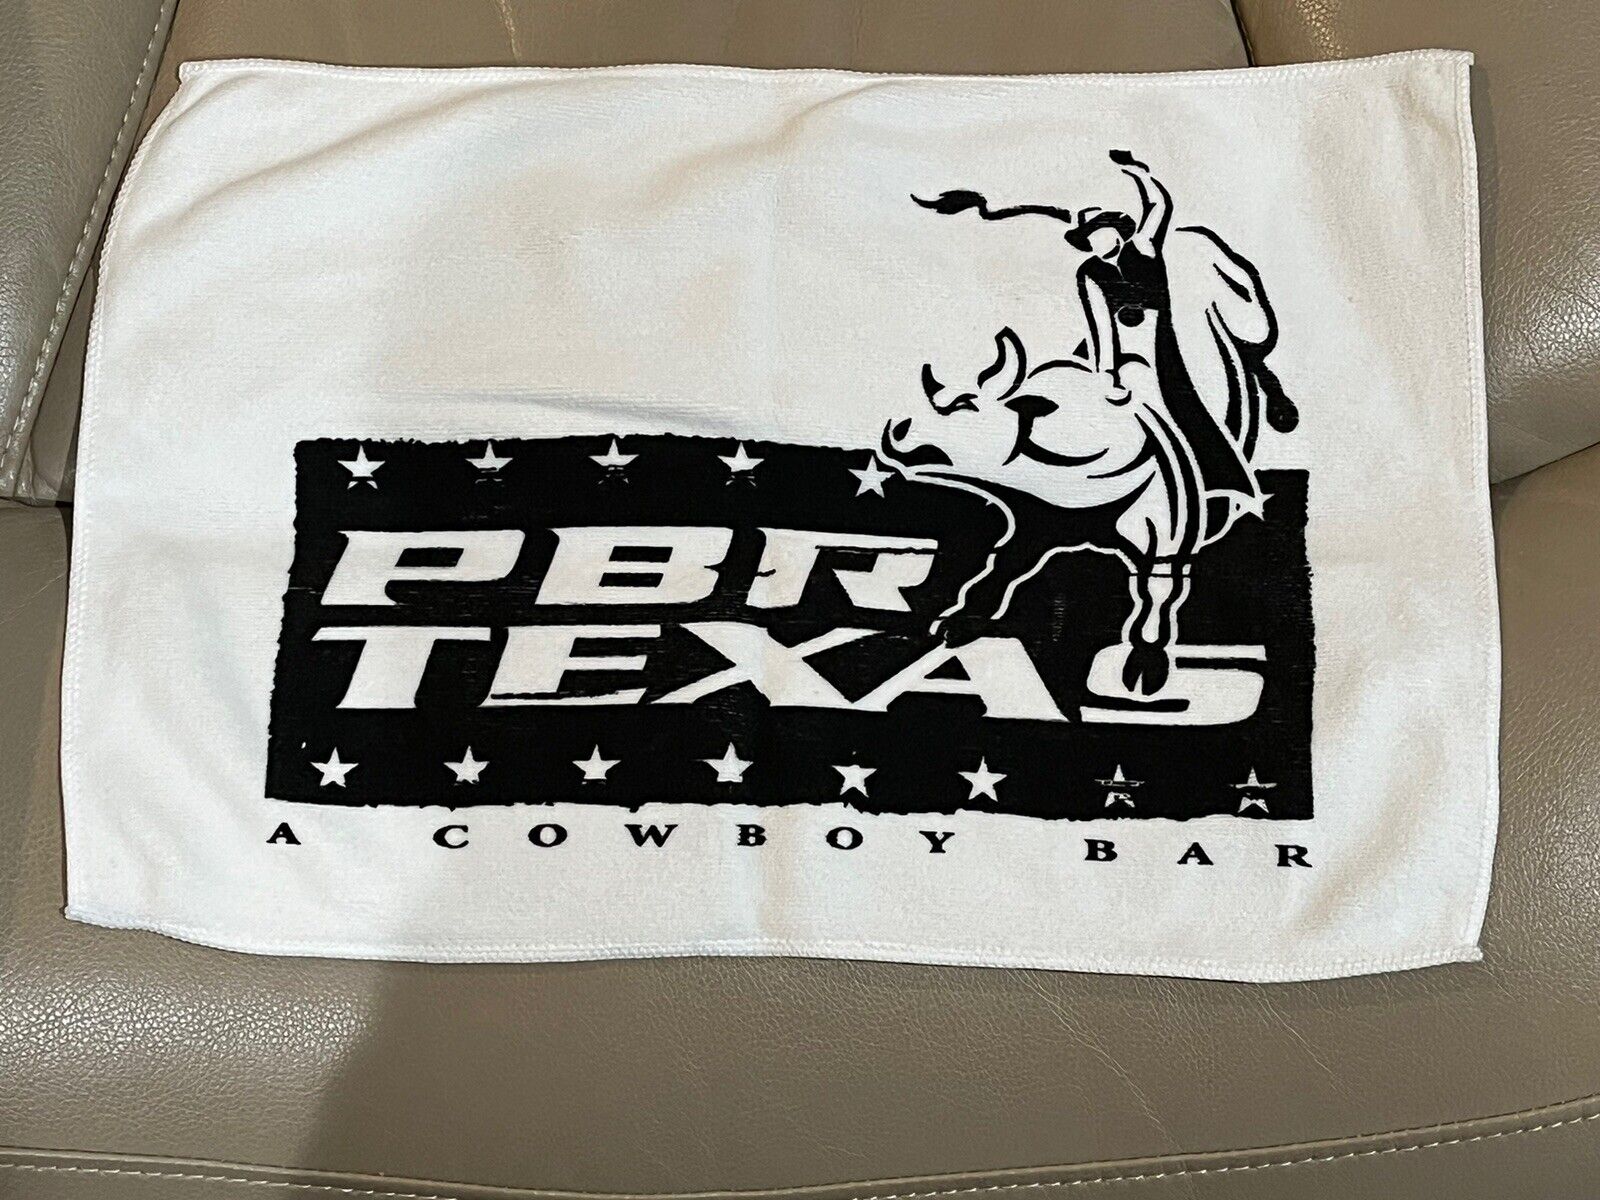 Professional Bull Riders-Team PBR Texas Cowboy Bar - Logo Towel